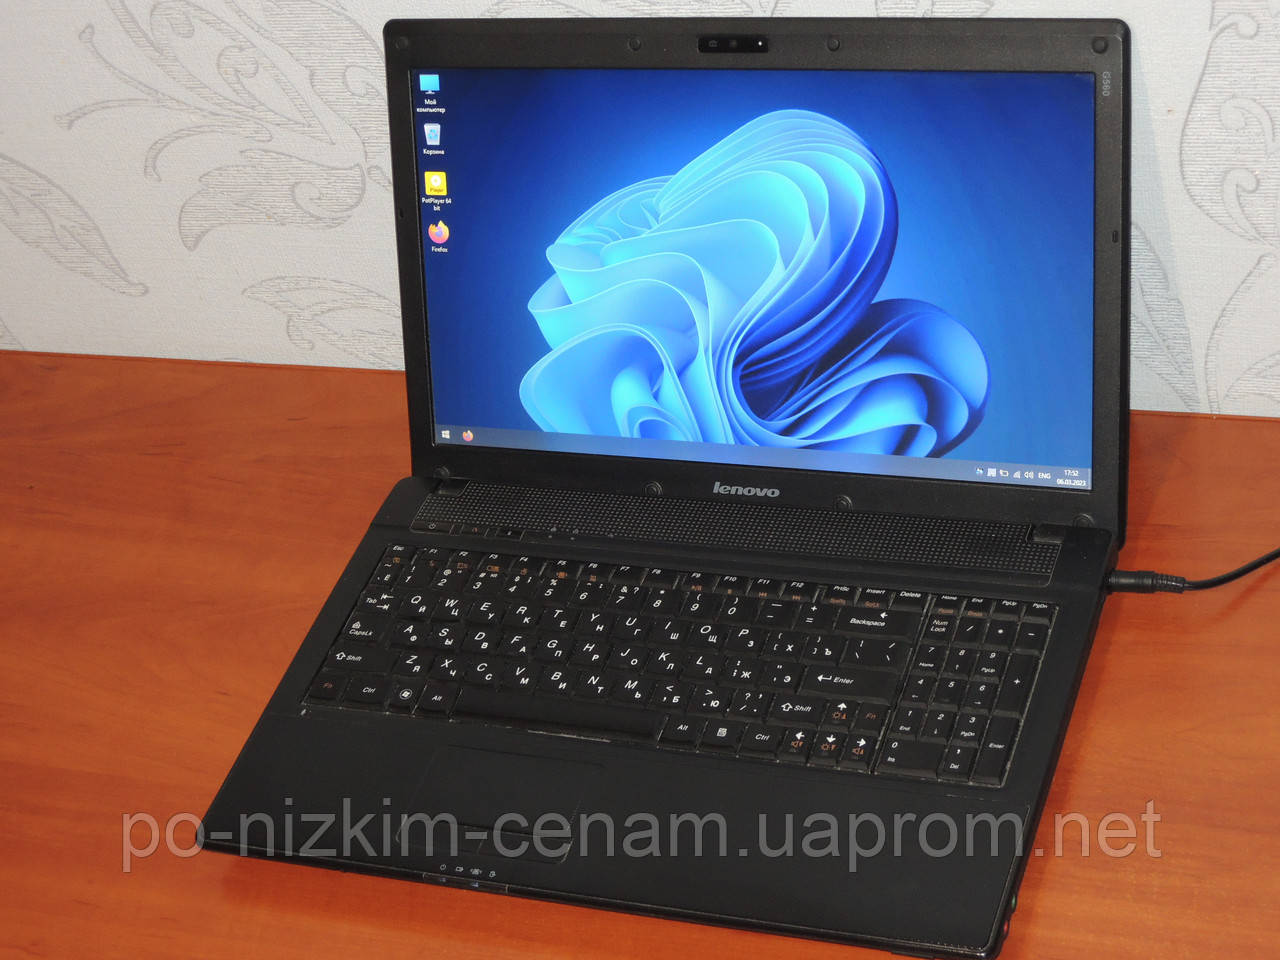 Ігровий Ноутбук Lenovo IdeaPad G560 - 15,6" - 4 Ядра - Ram 4Gb - HDD 320Gb - Ідеал !